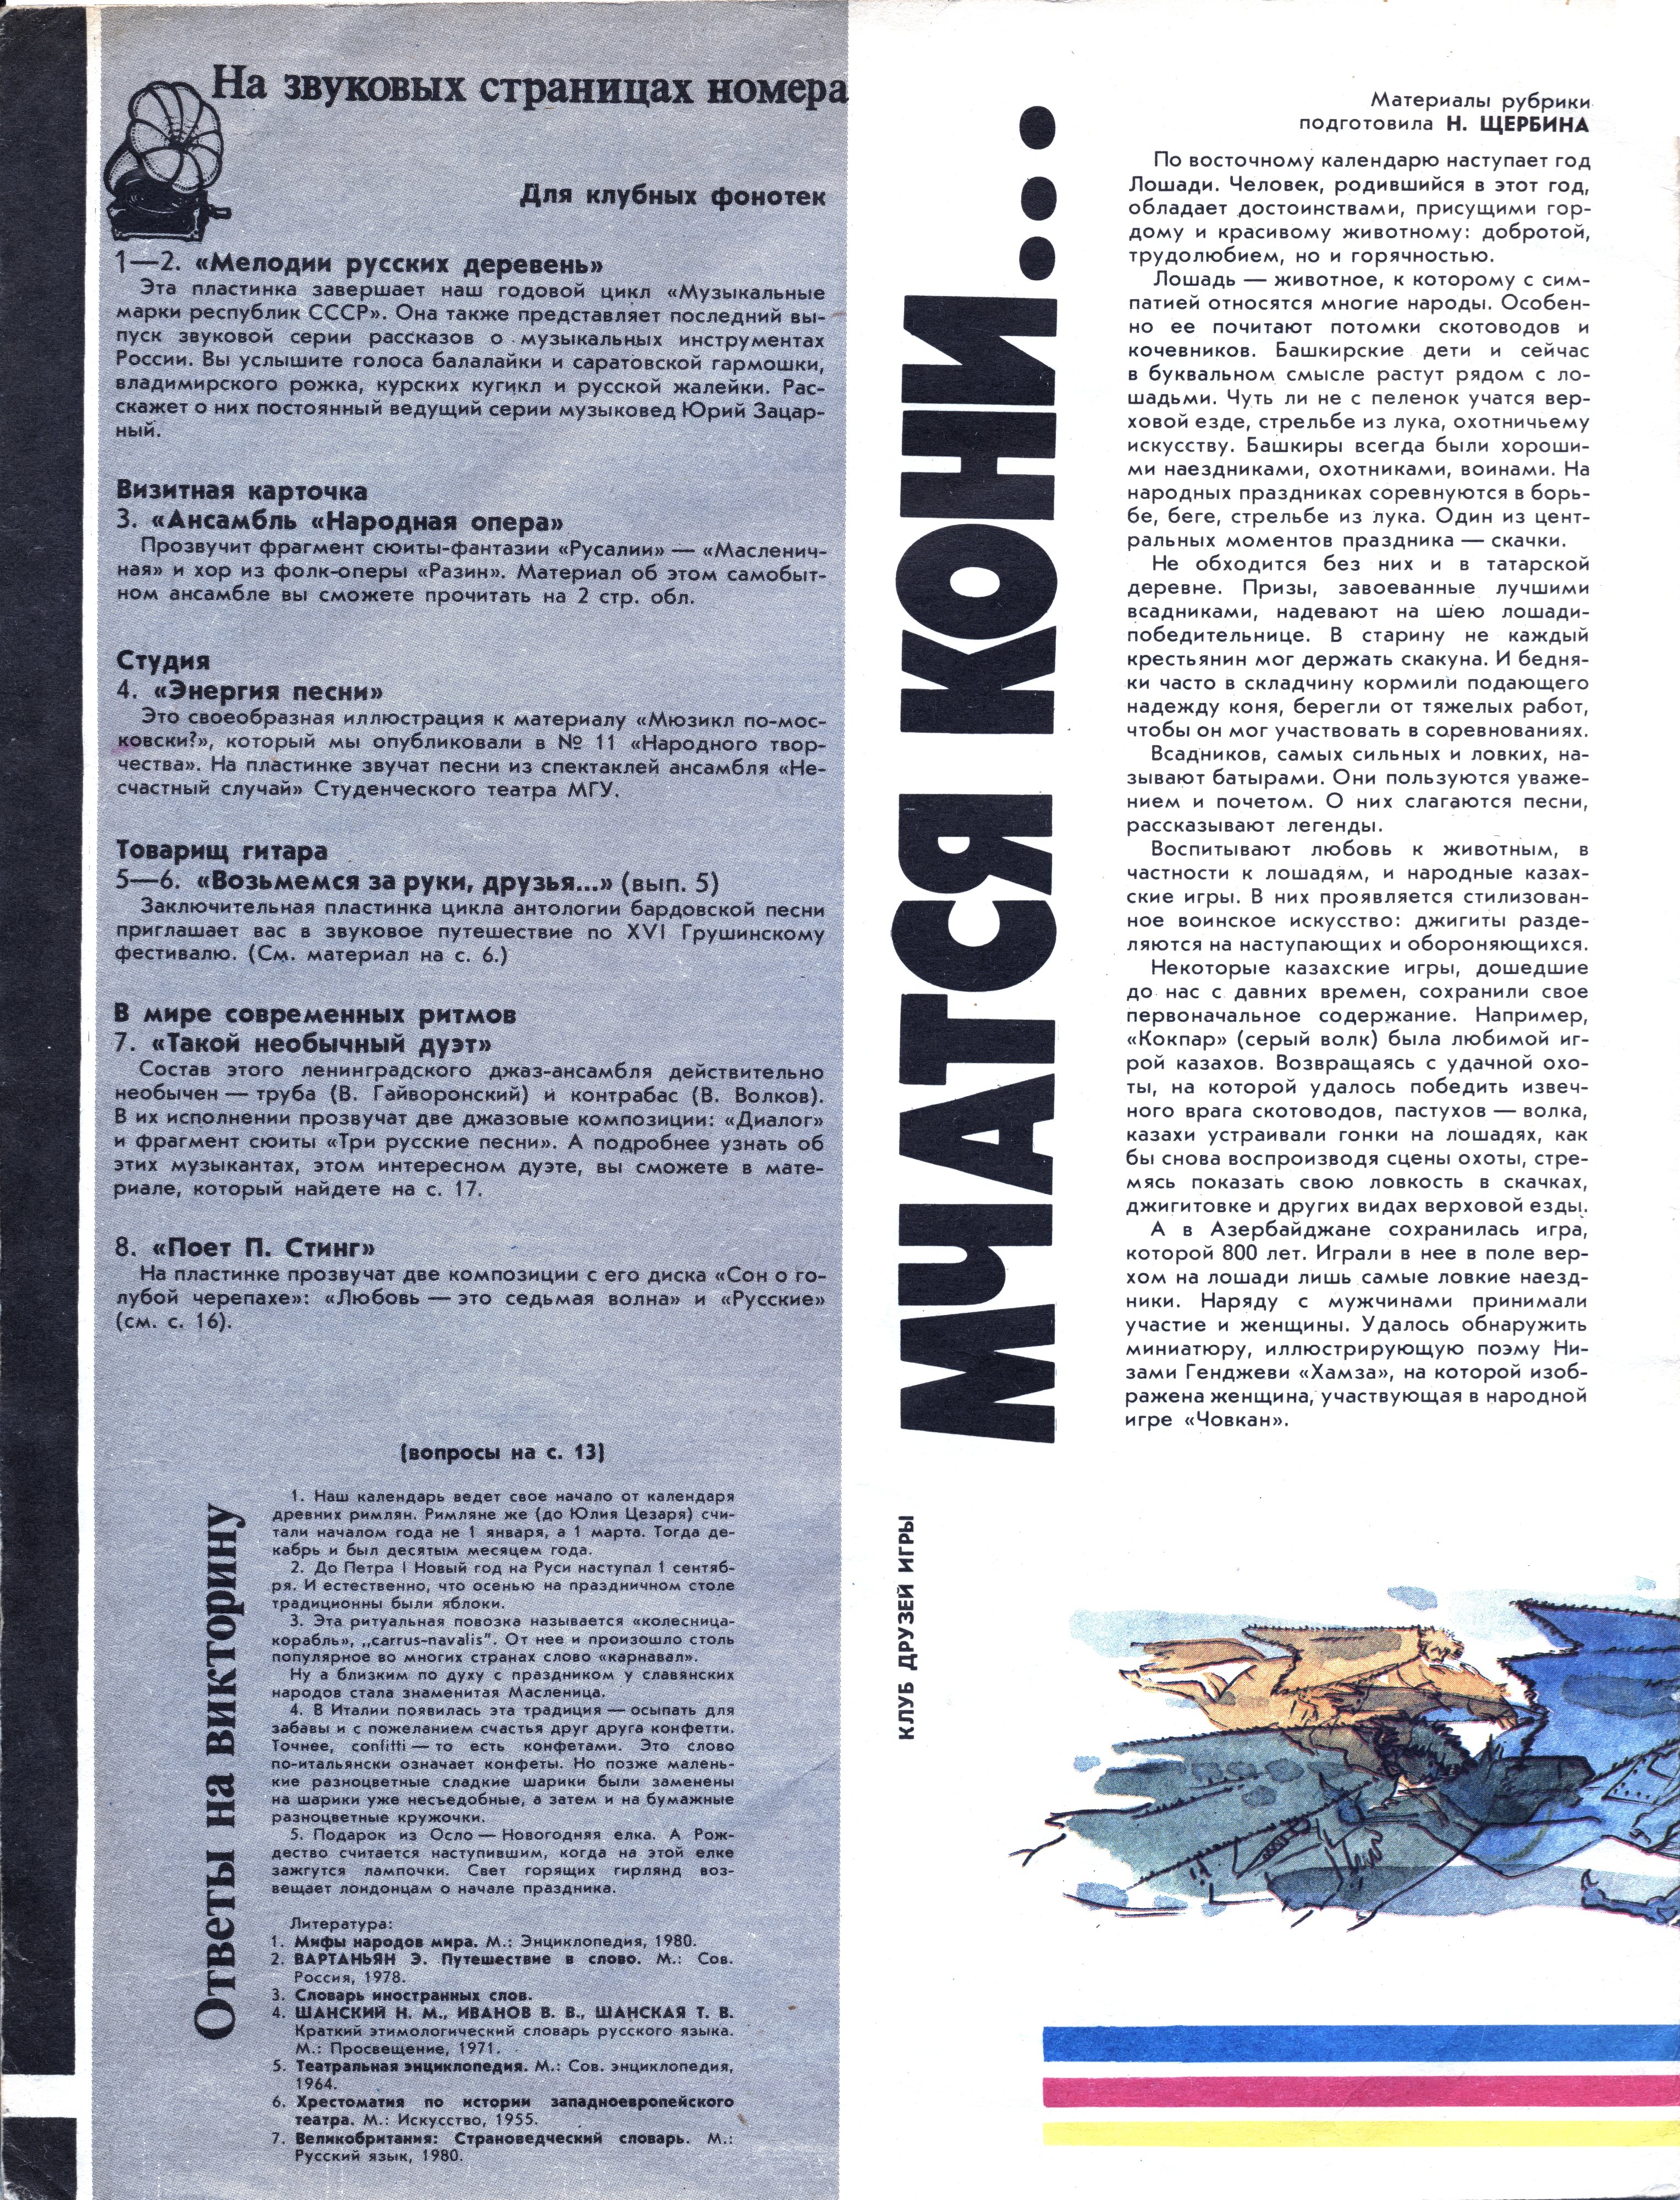 Народное творчество 1989 №12